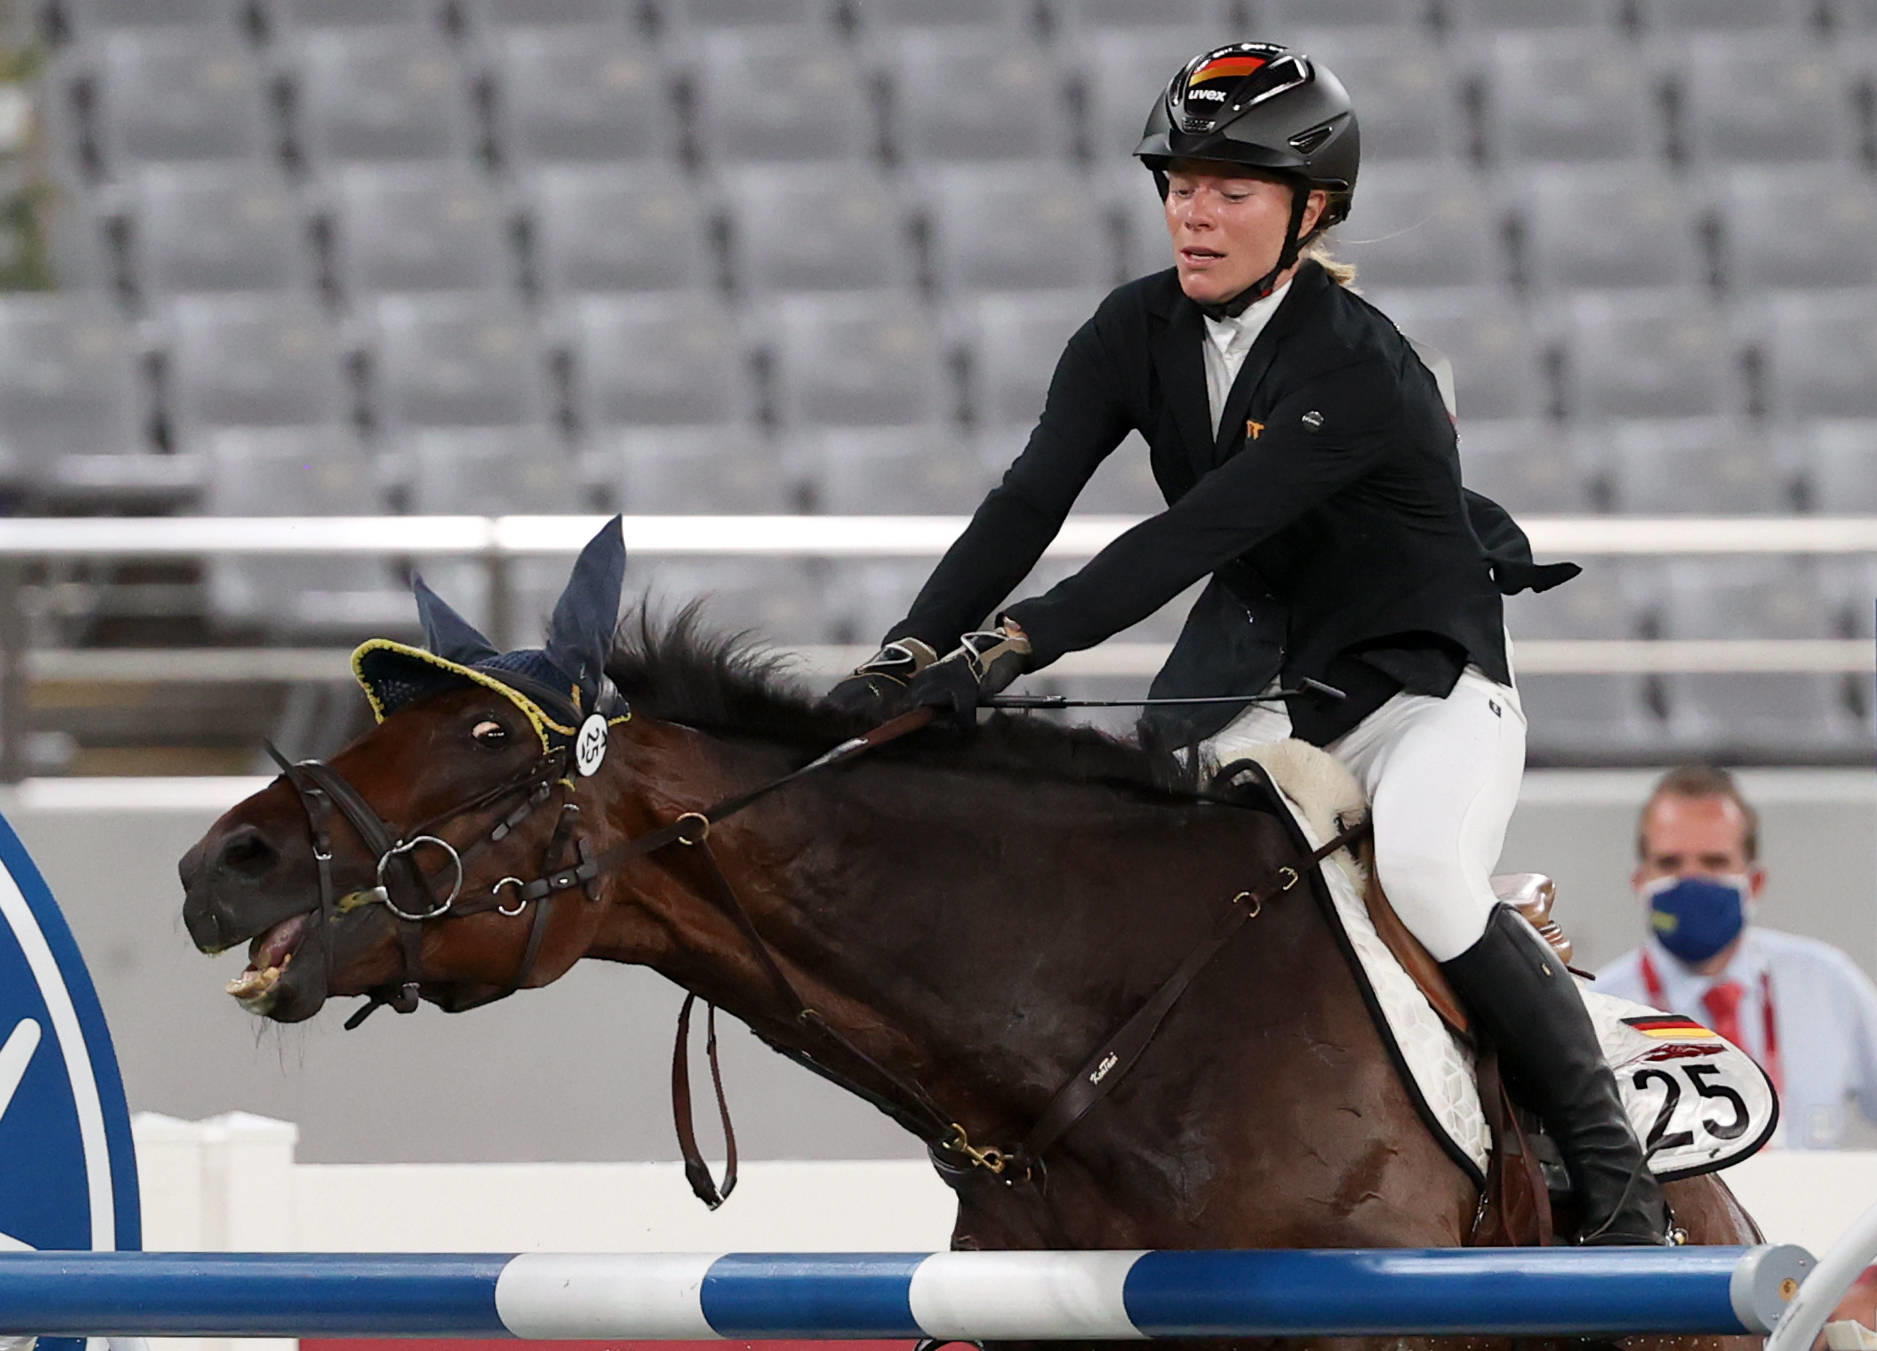 Aux JO de Tokyo, en 2021, la cavalière allemande Annika Schleu avait été accusée de maltraitance après avoir donné de nombreux coups à son cheval qui refusait de passer les obstacles. Sipa/Stanislav Krasilnikov